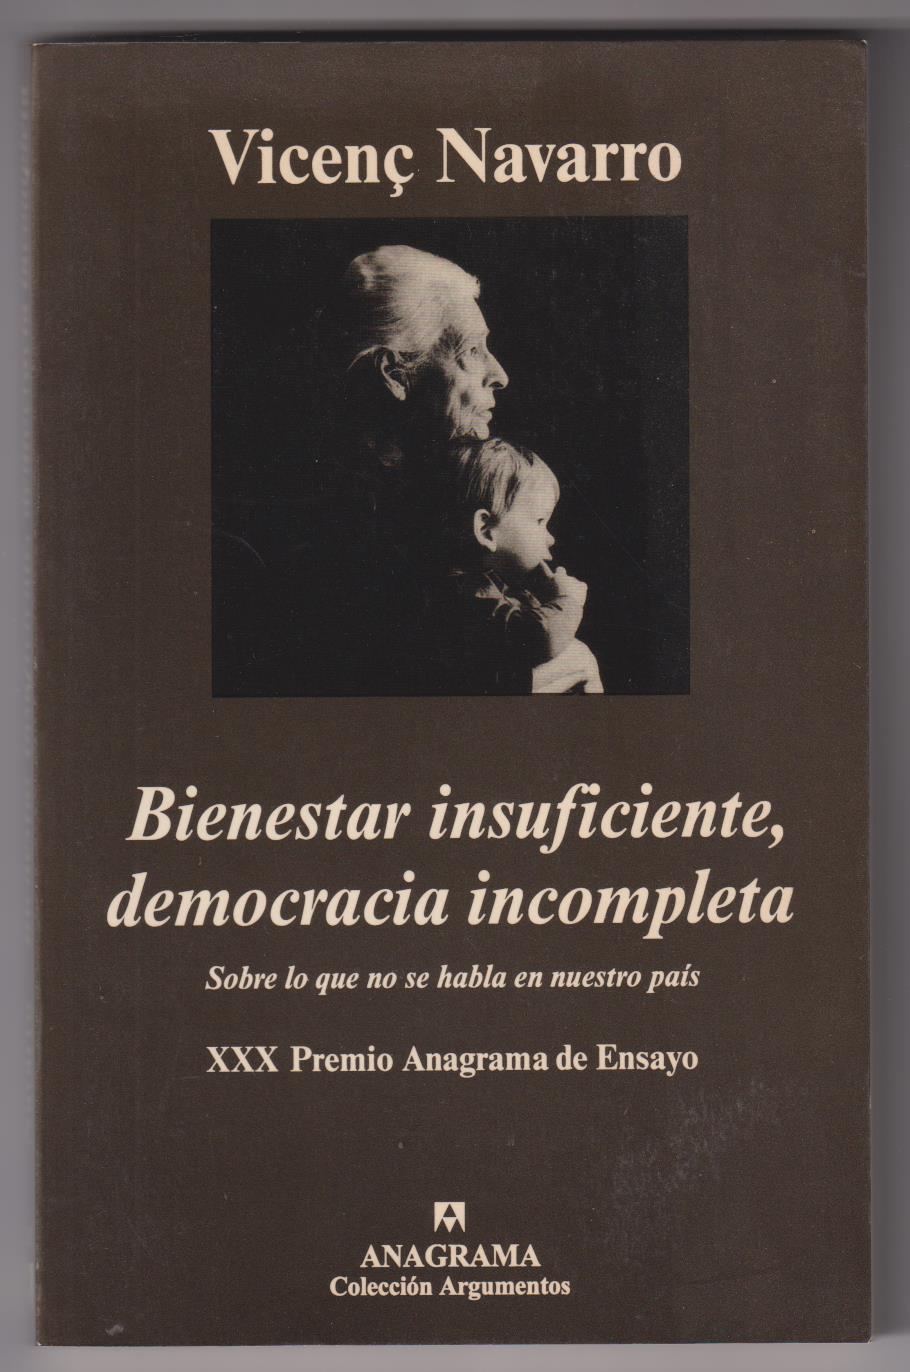 Vicenç Navarro. Bienestar insuficiente, democracia incompleta. Anagrama 2002. SIN USAR